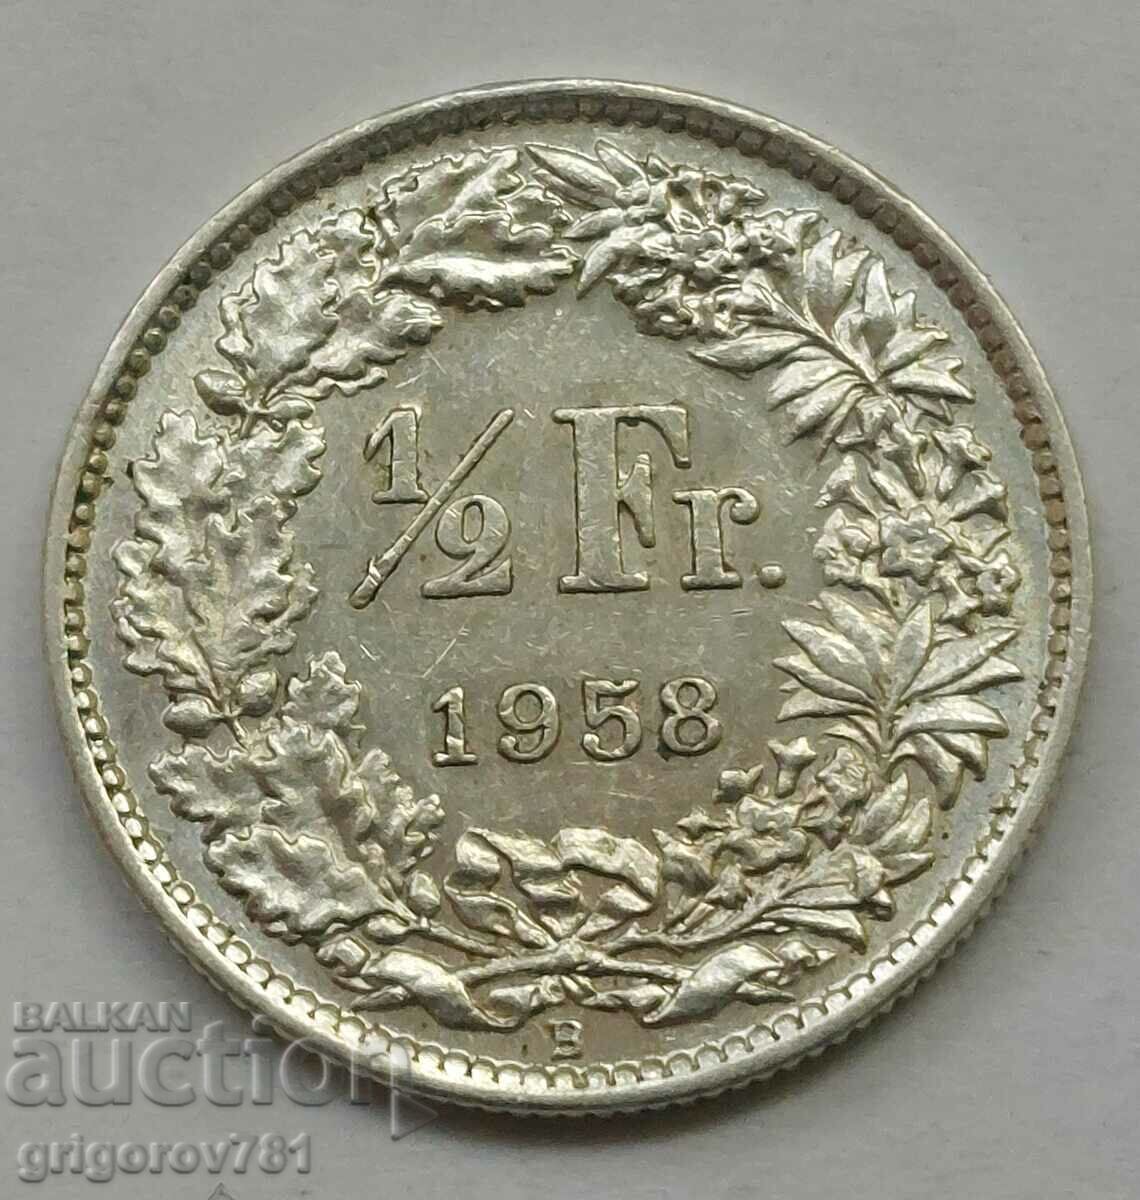 Ασημένιο φράγκο 1/2 Ελβετία 1958 Β - Ασημένιο νόμισμα #158